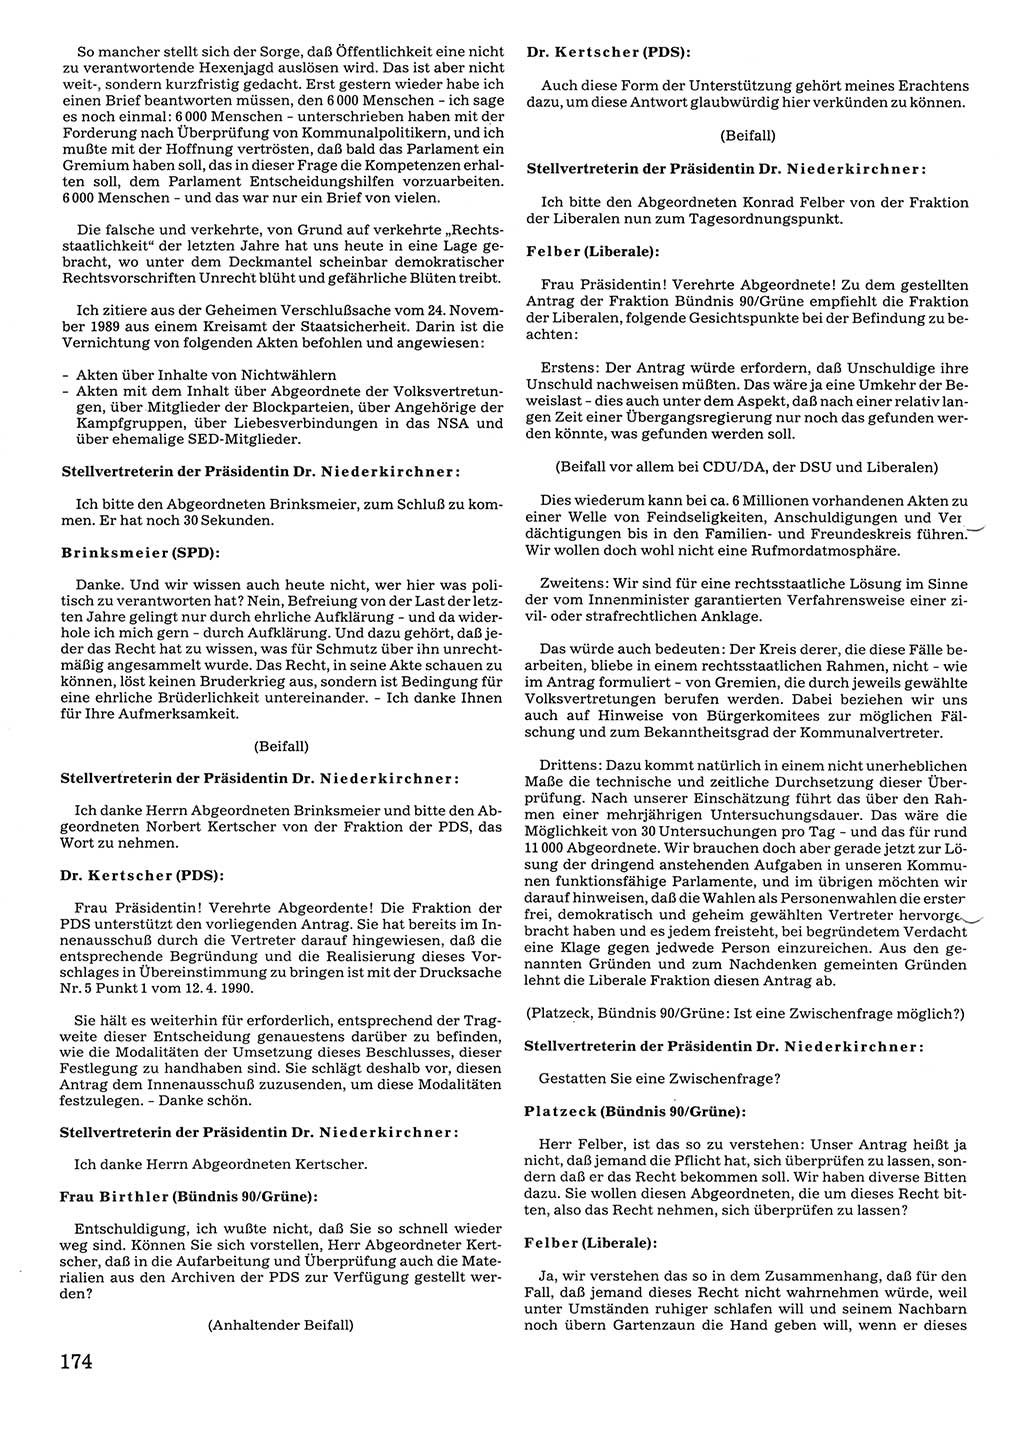 Tagungen der Volkskammer (VK) der Deutschen Demokratischen Republik (DDR), 10. Wahlperiode 1990, Seite 174 (VK. DDR 10. WP. 1990, Prot. Tg. 1-38, 5.4.-2.10.1990, S. 174)